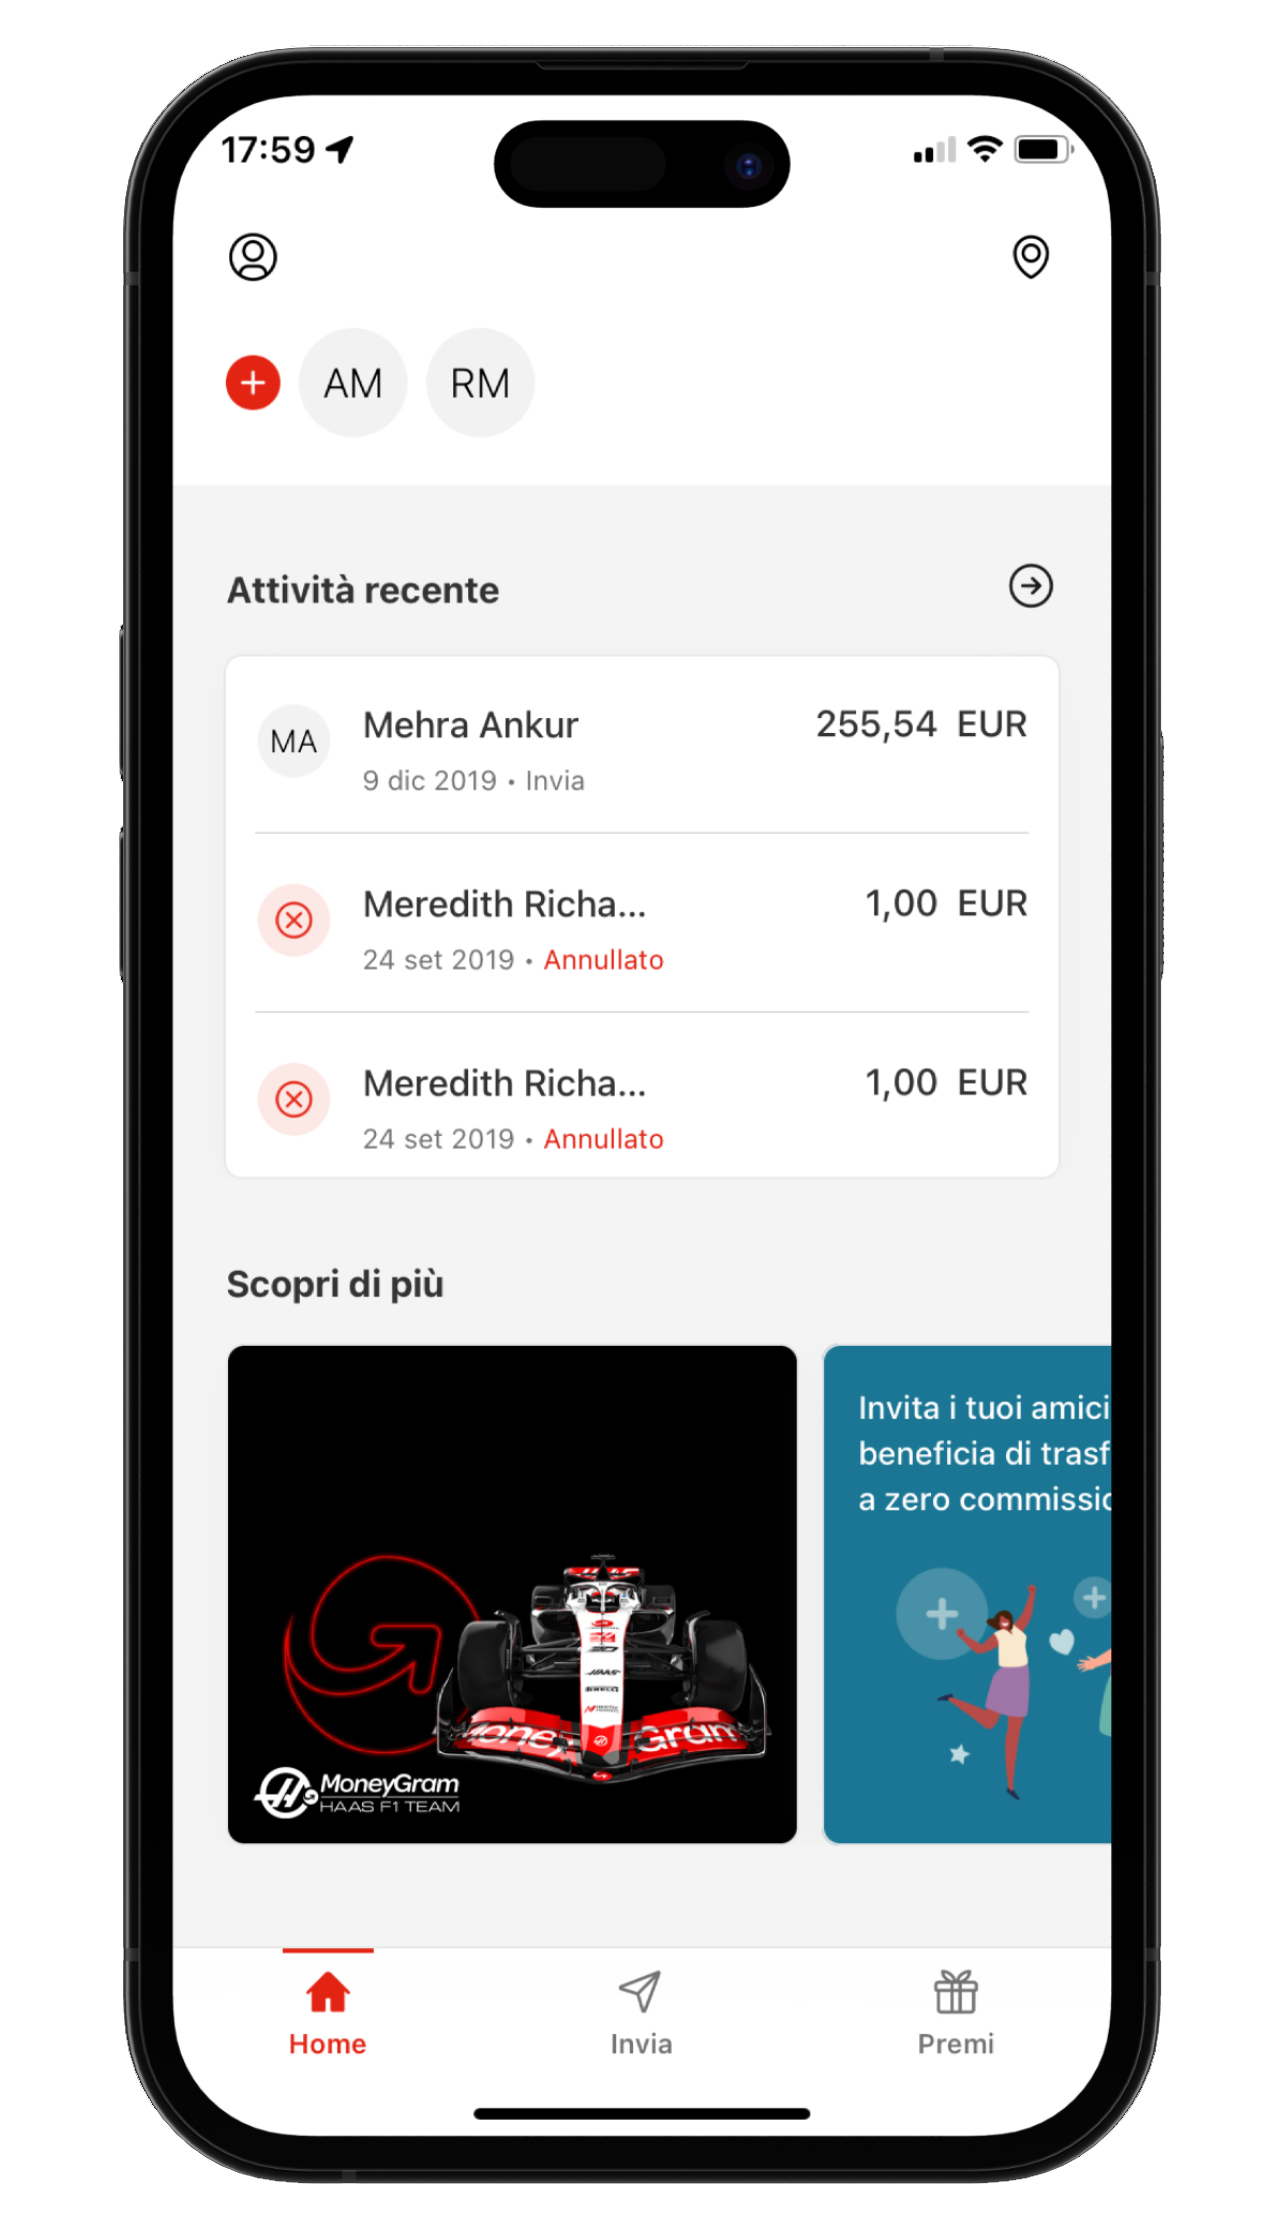 Immagine del telefono con l'app MoneyGram Money Transfer